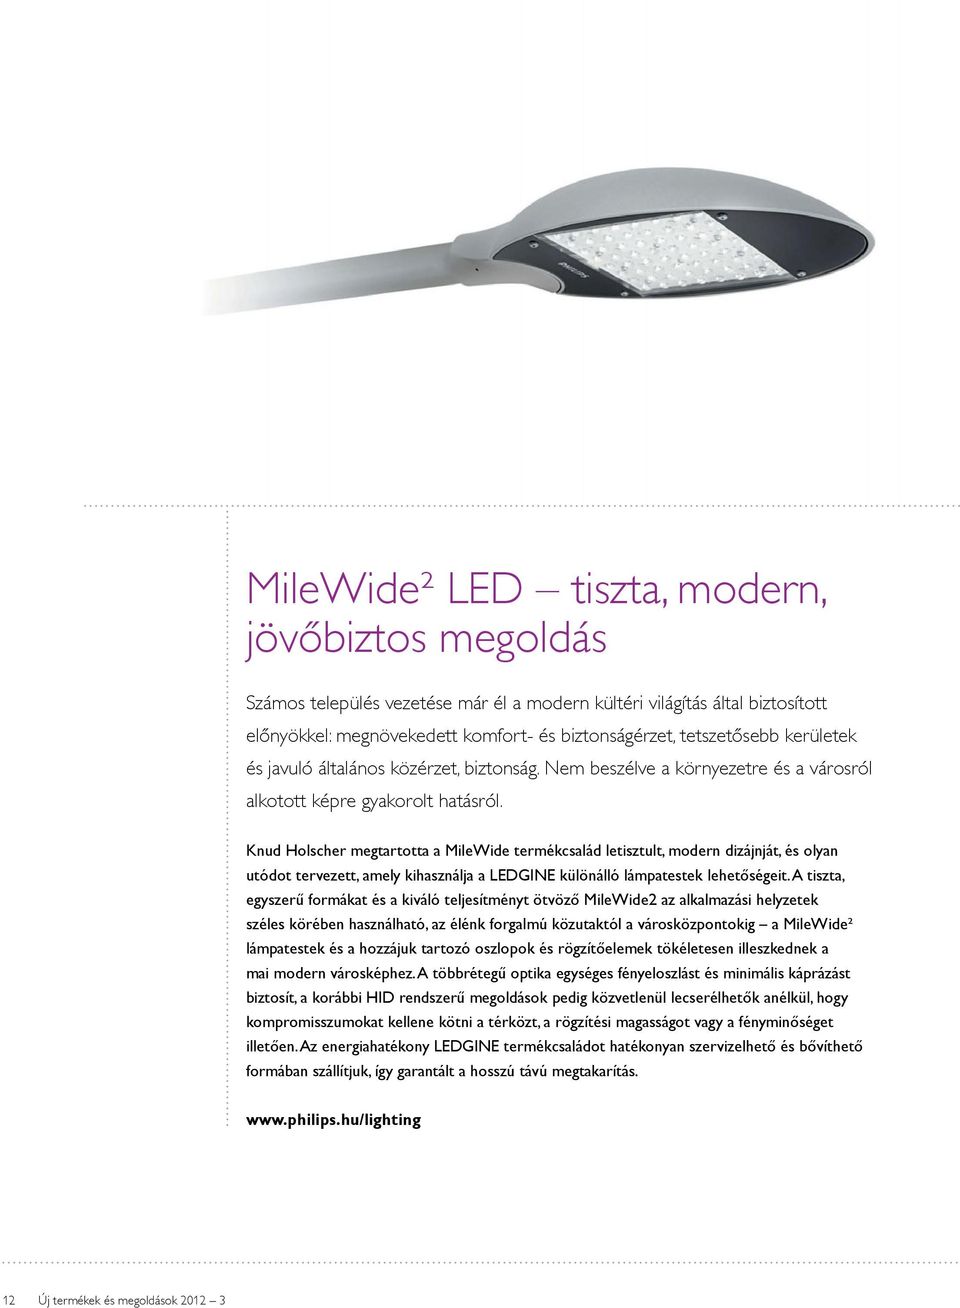 Knud Holscher megtartotta a MileWide termékcsalád letisztult, modern dizájnját, és olyan utódot tervezett, amely kihasználja a LEDGINE különálló lámpatestek lehetőségeit.